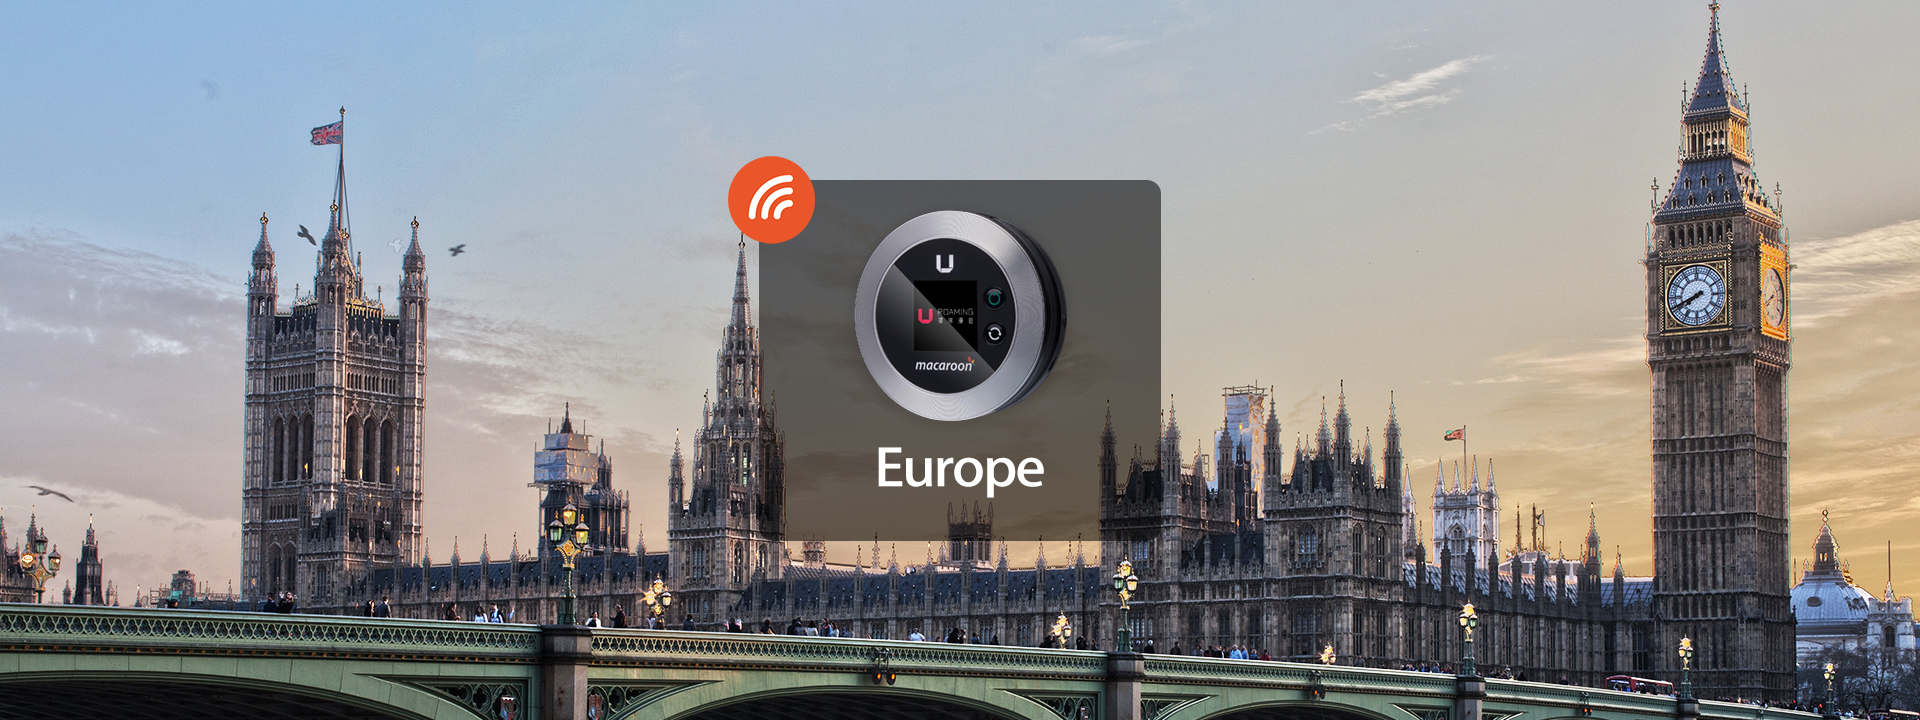 歐洲4G WiFi分享器 由Uroaming提供